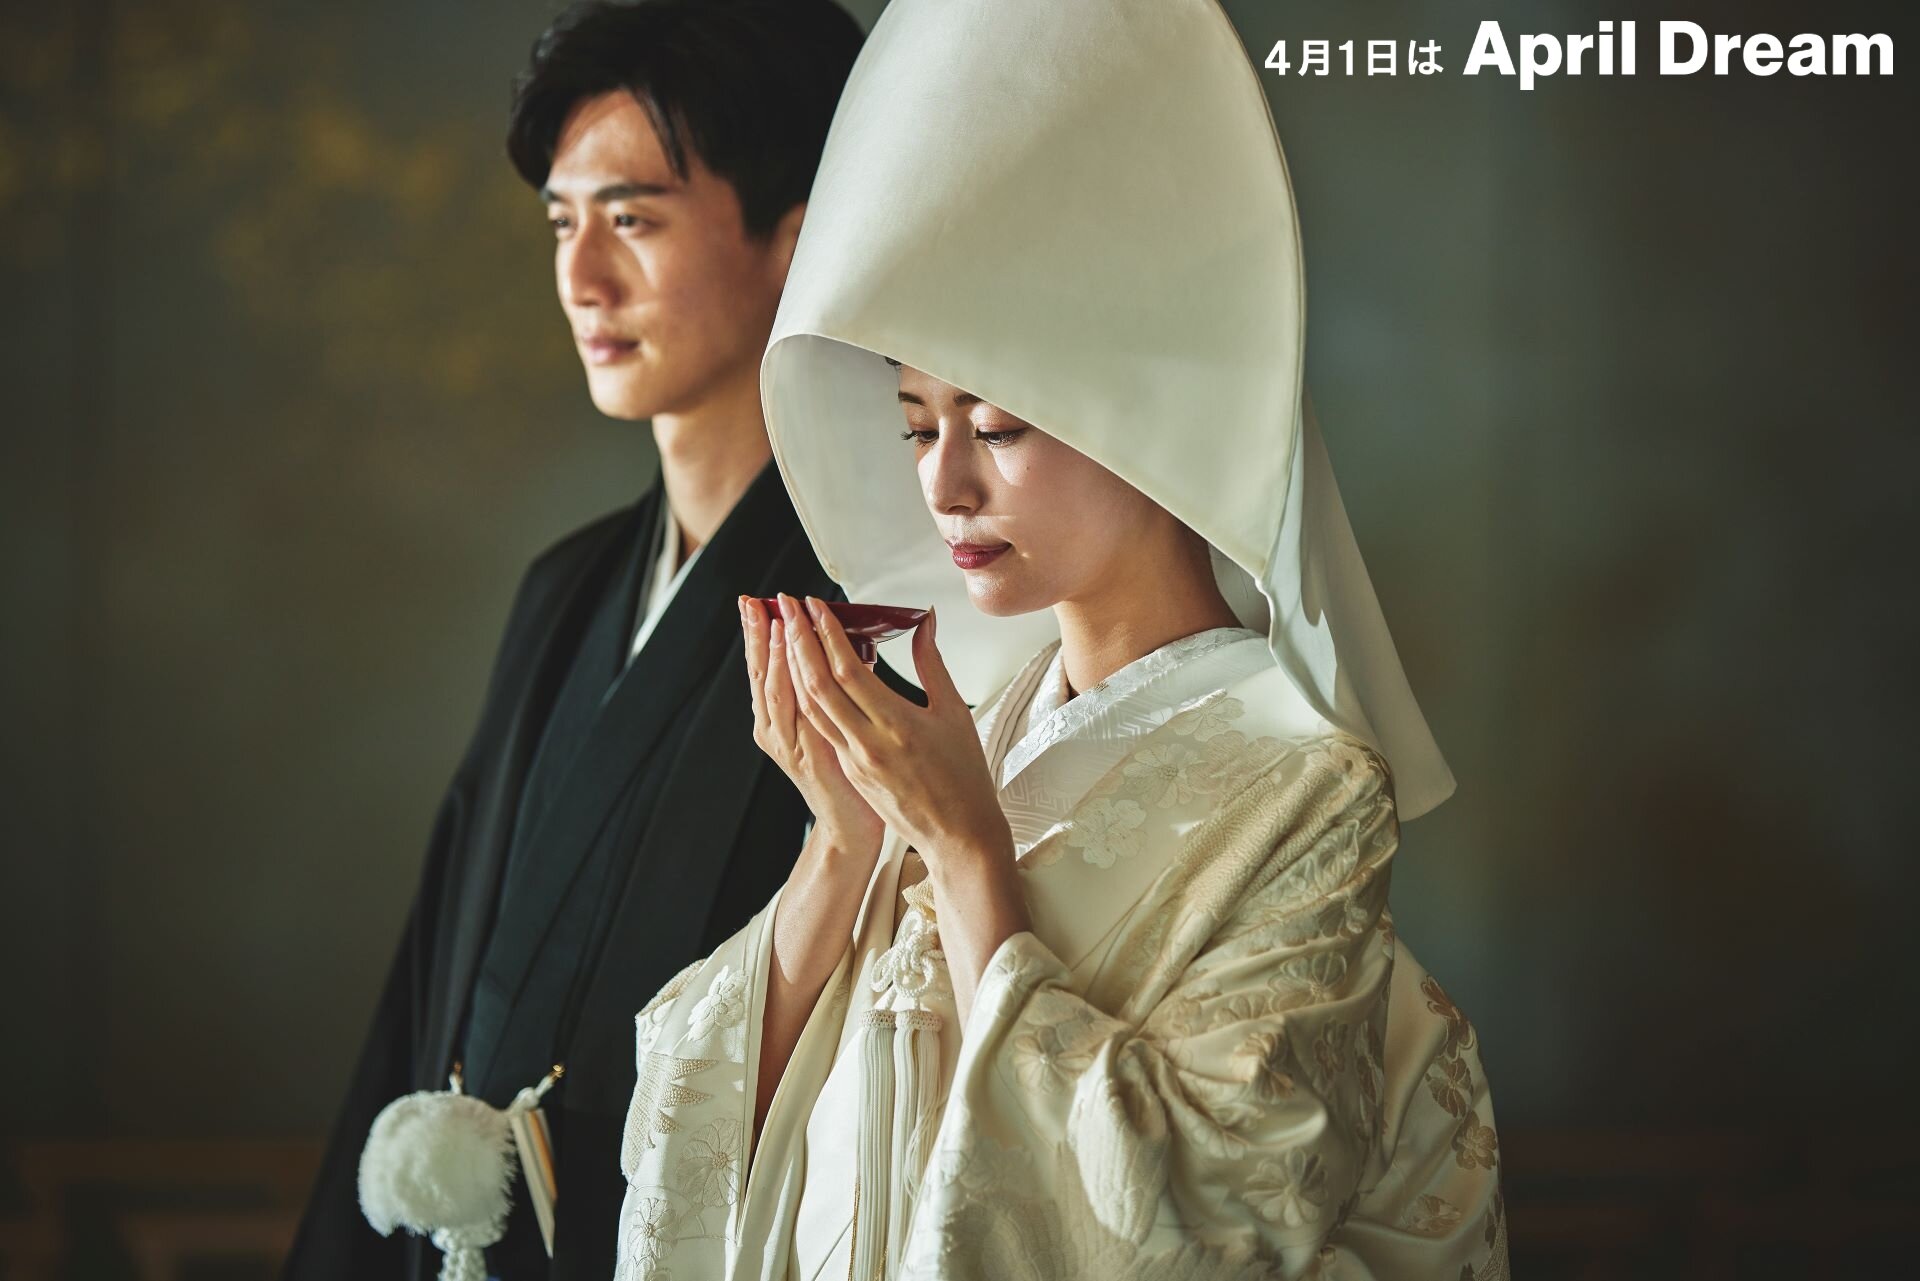 【明治記念館】永久に語り継がれる、美しい日本の結婚式をプロデュースしたい